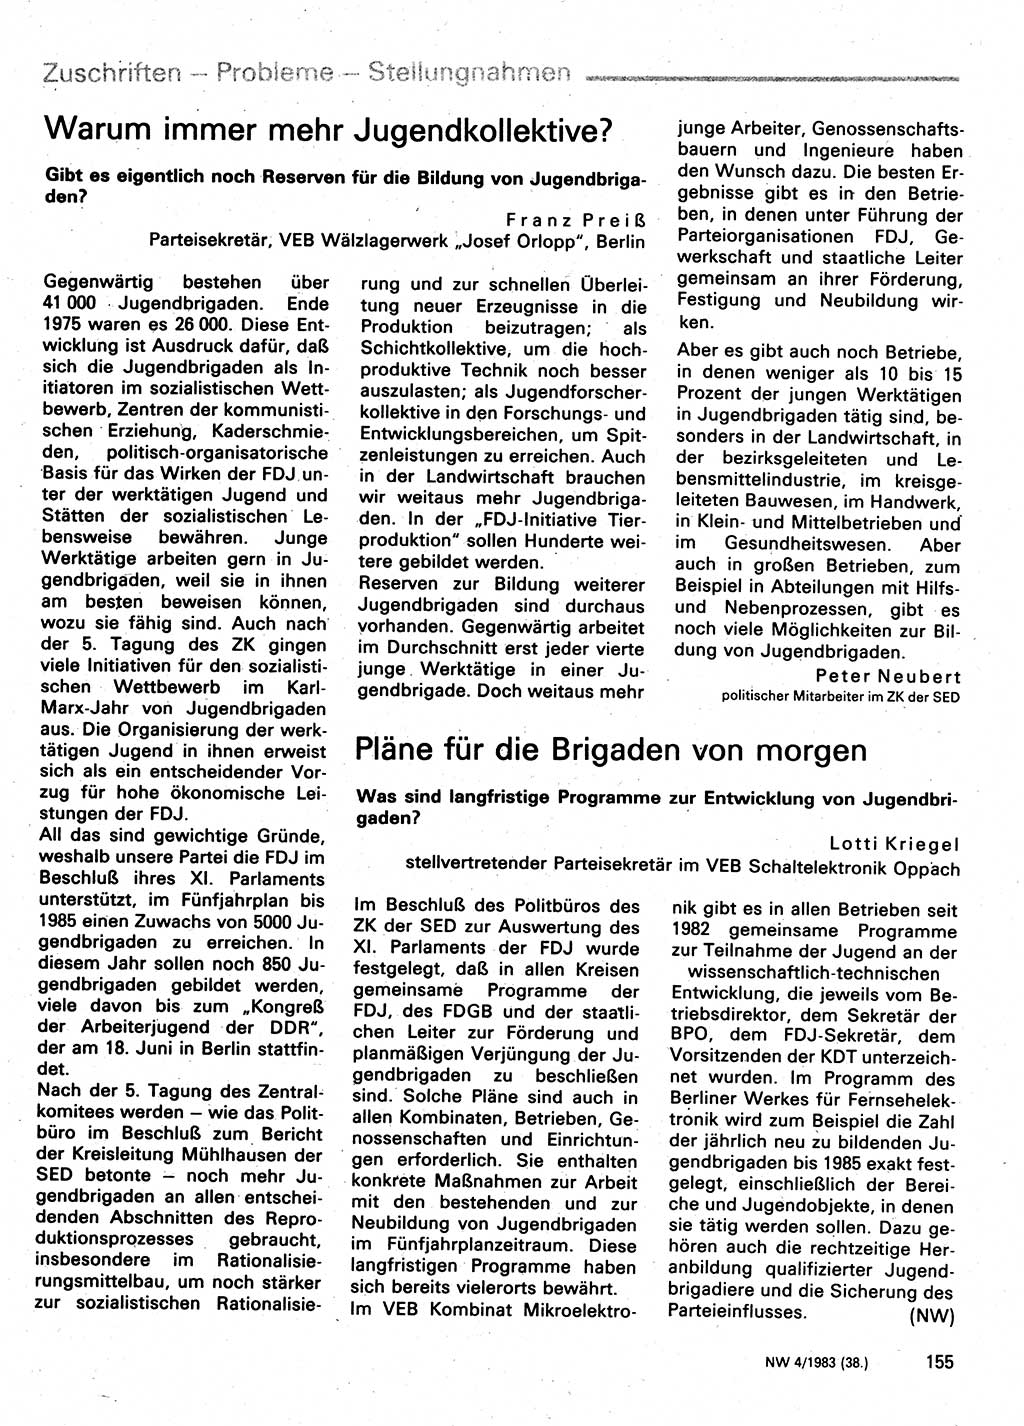 Neuer Weg (NW), Organ des Zentralkomitees (ZK) der SED (Sozialistische Einheitspartei Deutschlands) für Fragen des Parteilebens, 38. Jahrgang [Deutsche Demokratische Republik (DDR)] 1983, Seite 155 (NW ZK SED DDR 1983, S. 155)